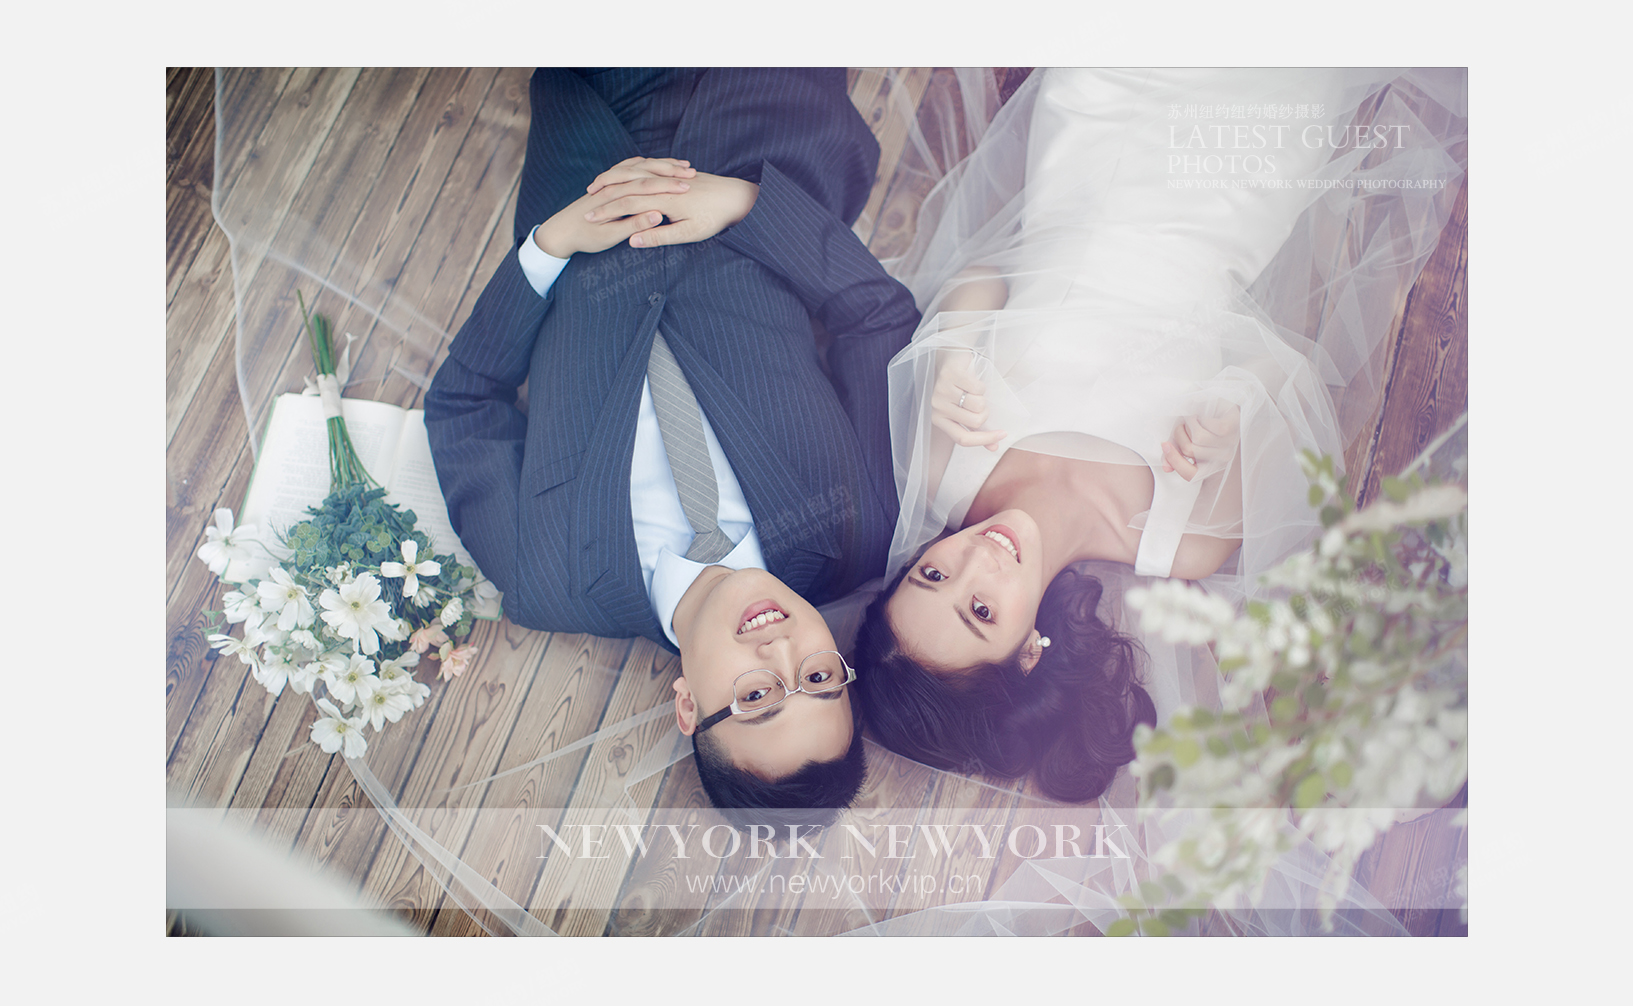 Mr.郭 & Ms.王（纽约纽约VIP尊荣馆）婚纱摄影照